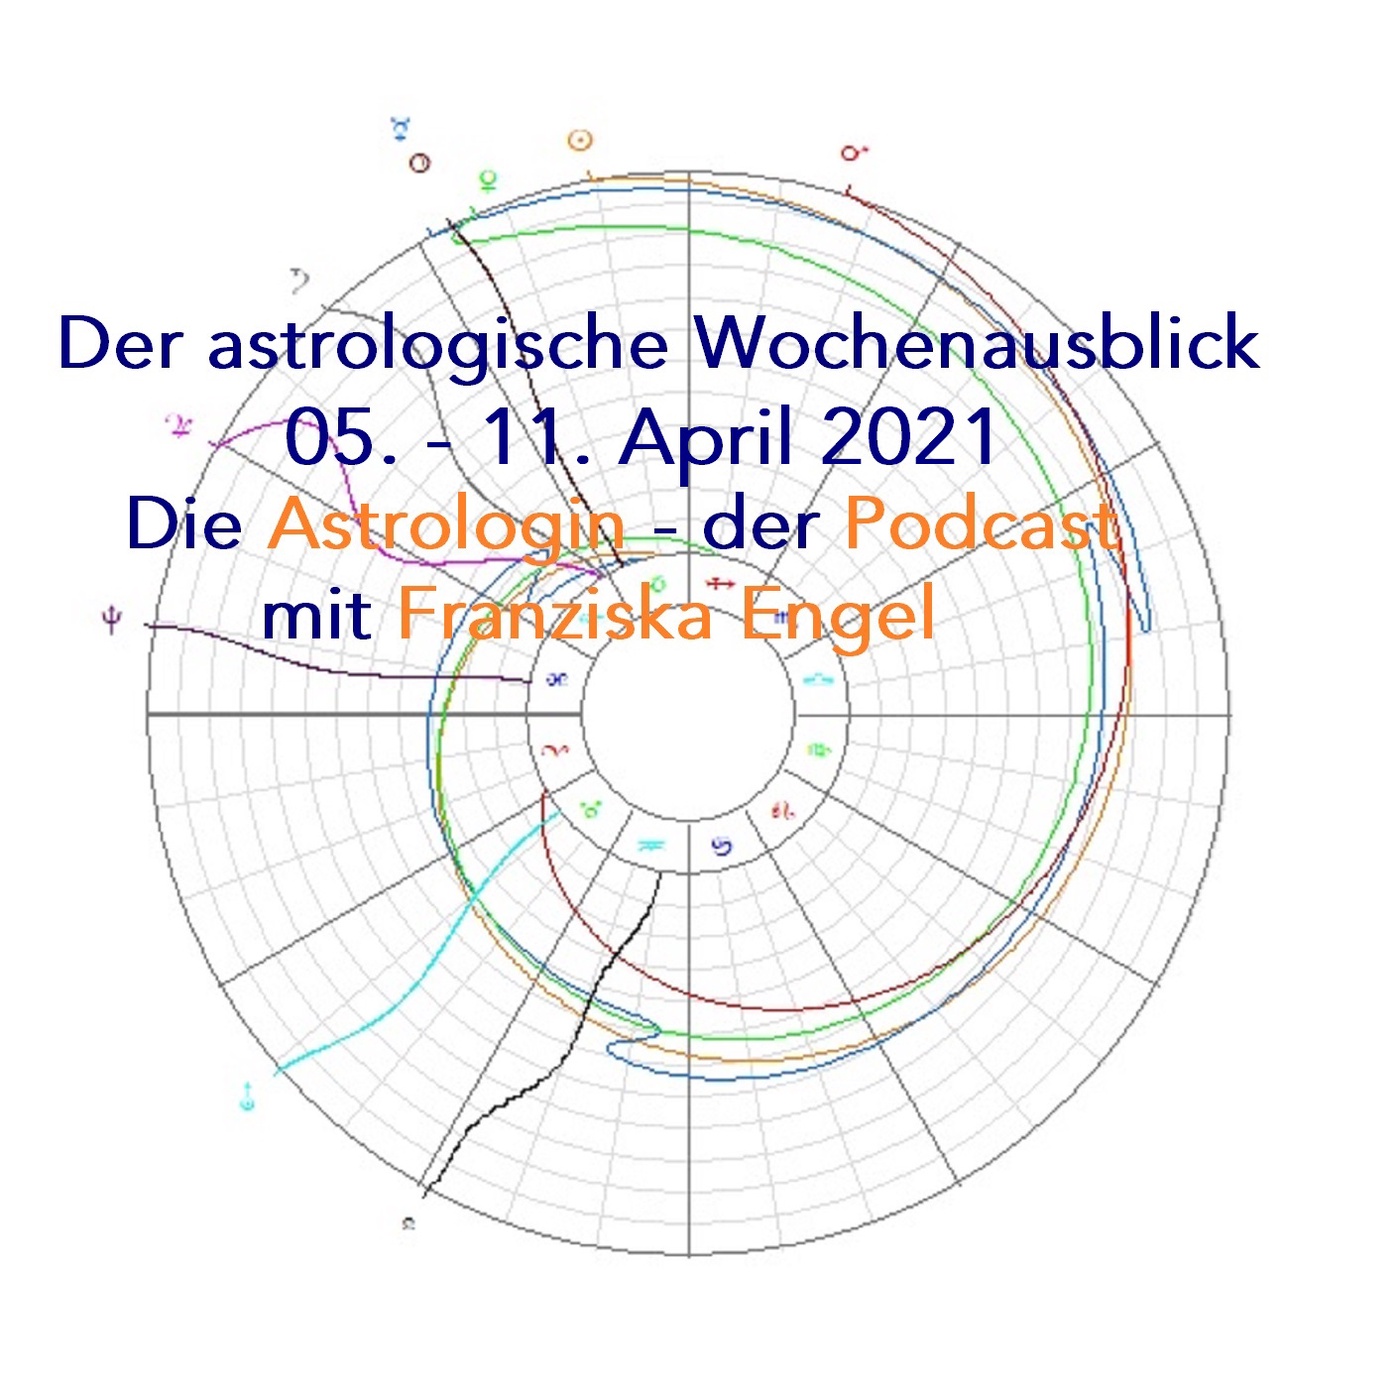 Astrologischer Wochenausblick 05. - 11. April 2021